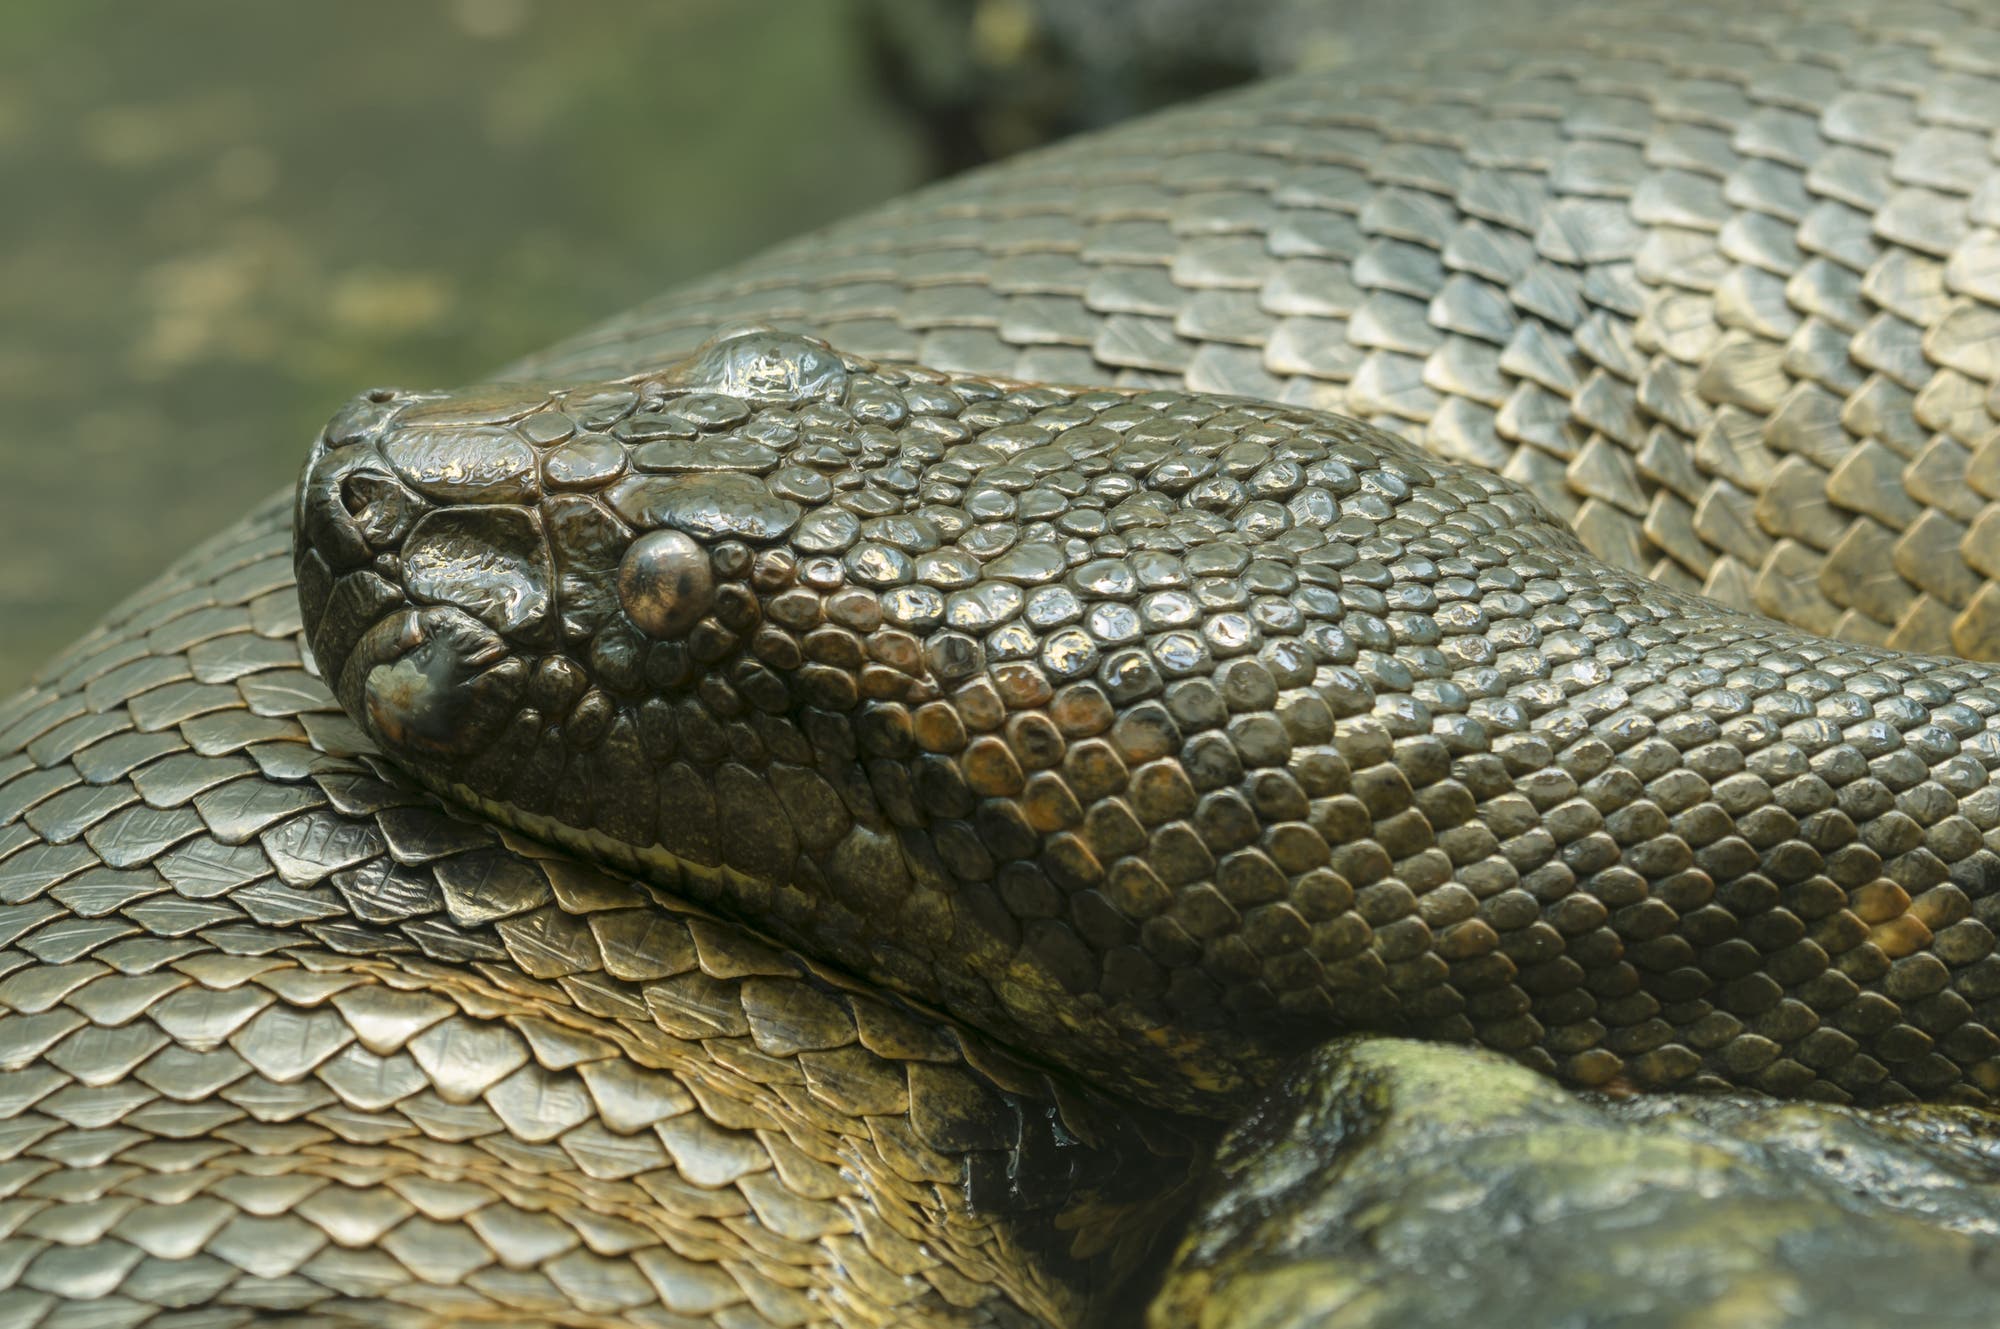 Die südamerikanischen Anakondas gehören zu den größten Riesenschlangen der Erde: Ausgewachsene Exemplare können sieben Meter und länger werden. Allerdings bedrohen Abholzung, illegaler Tierfank und Wilderei die Art.